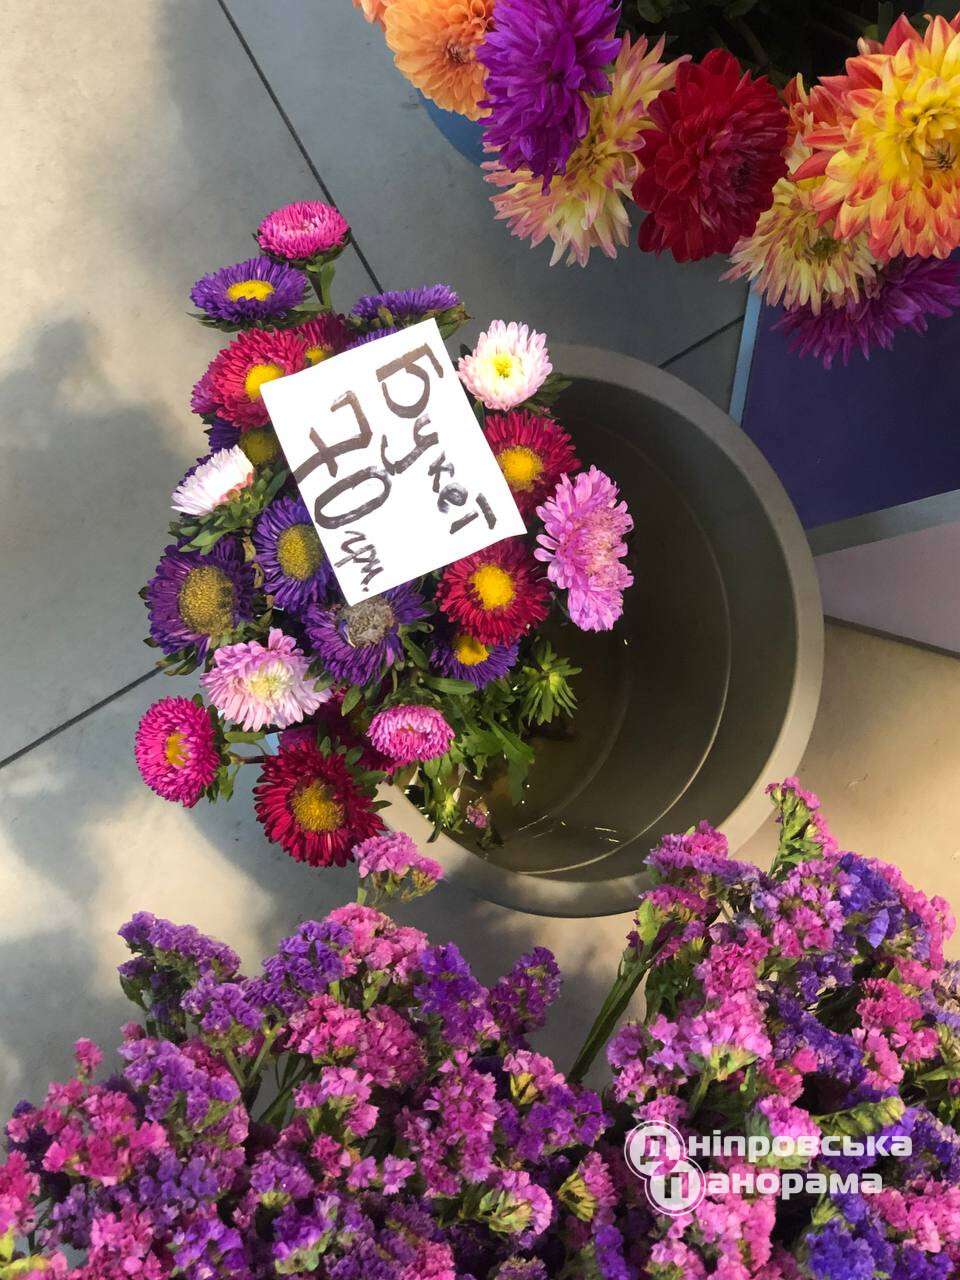 цены на цветы Днепр